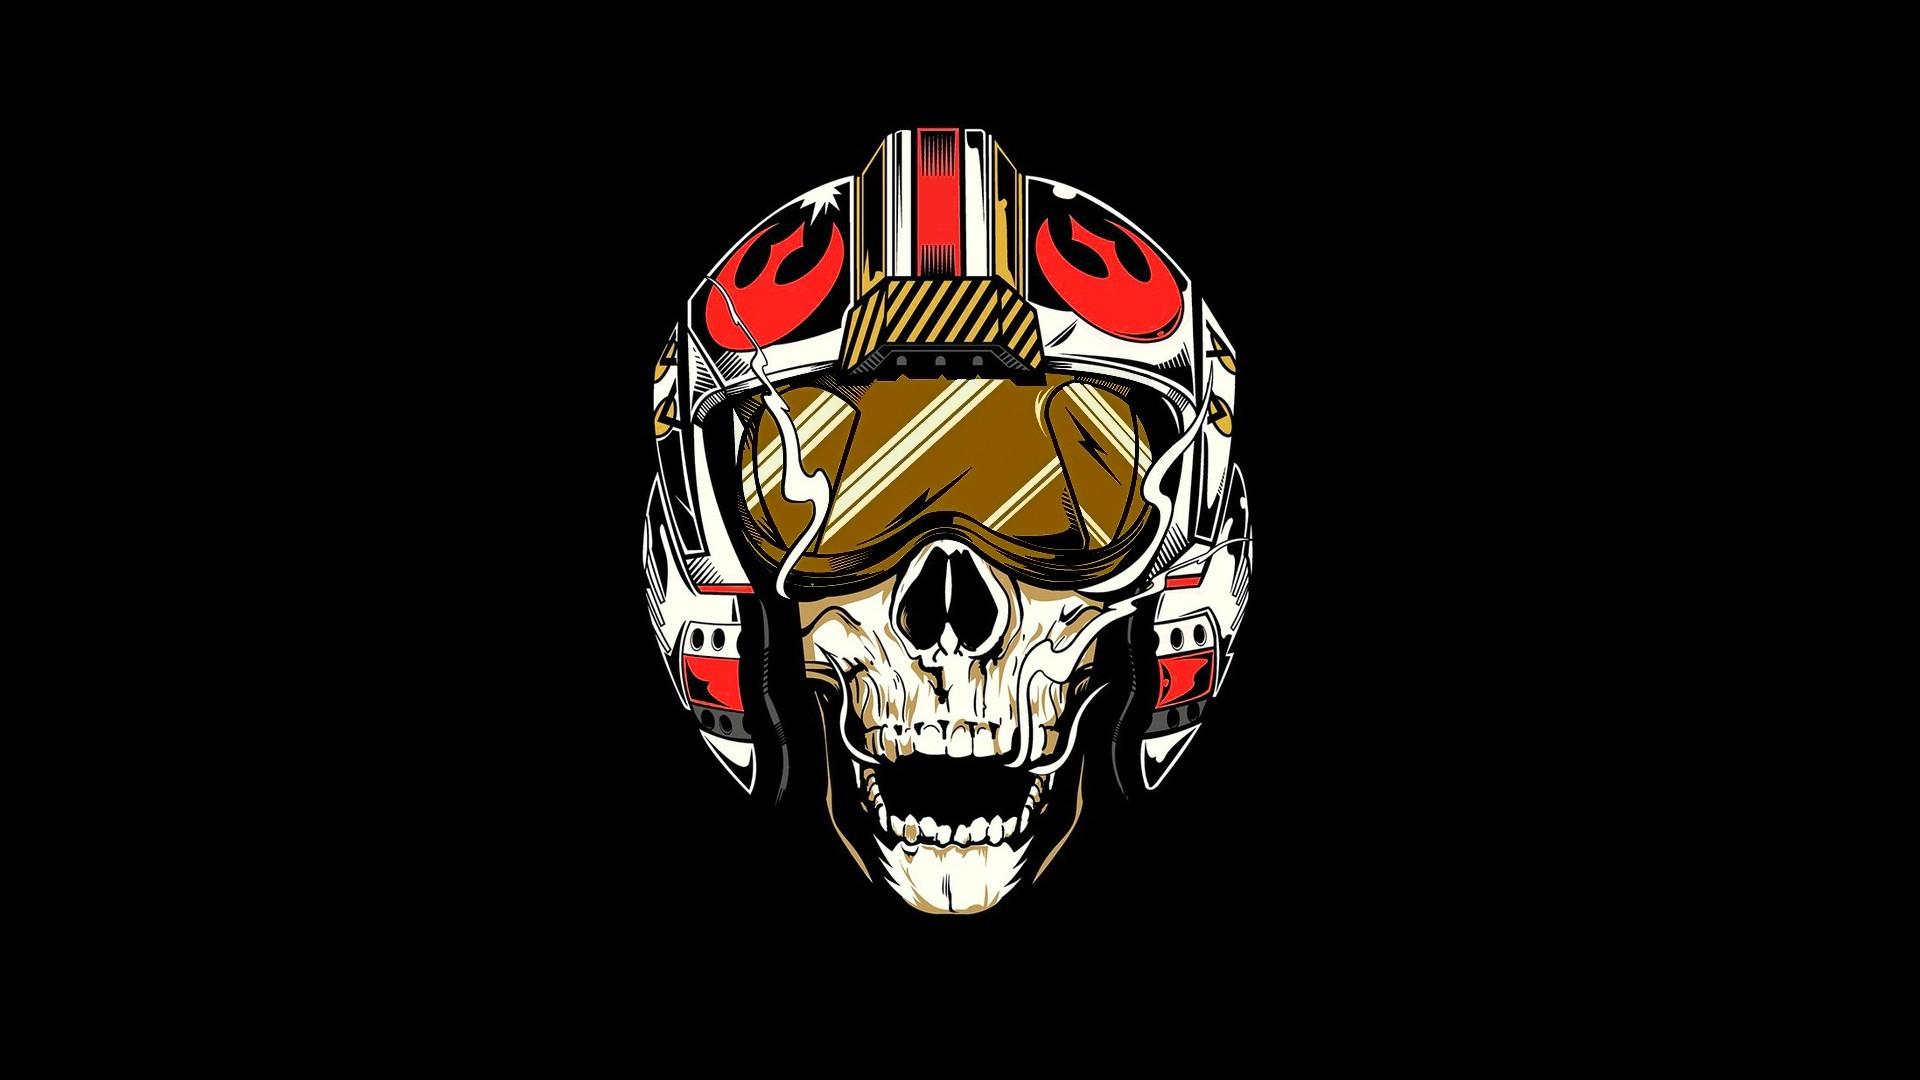 Fighter Pilot Skull Art Star Wars Wallpaper, HD